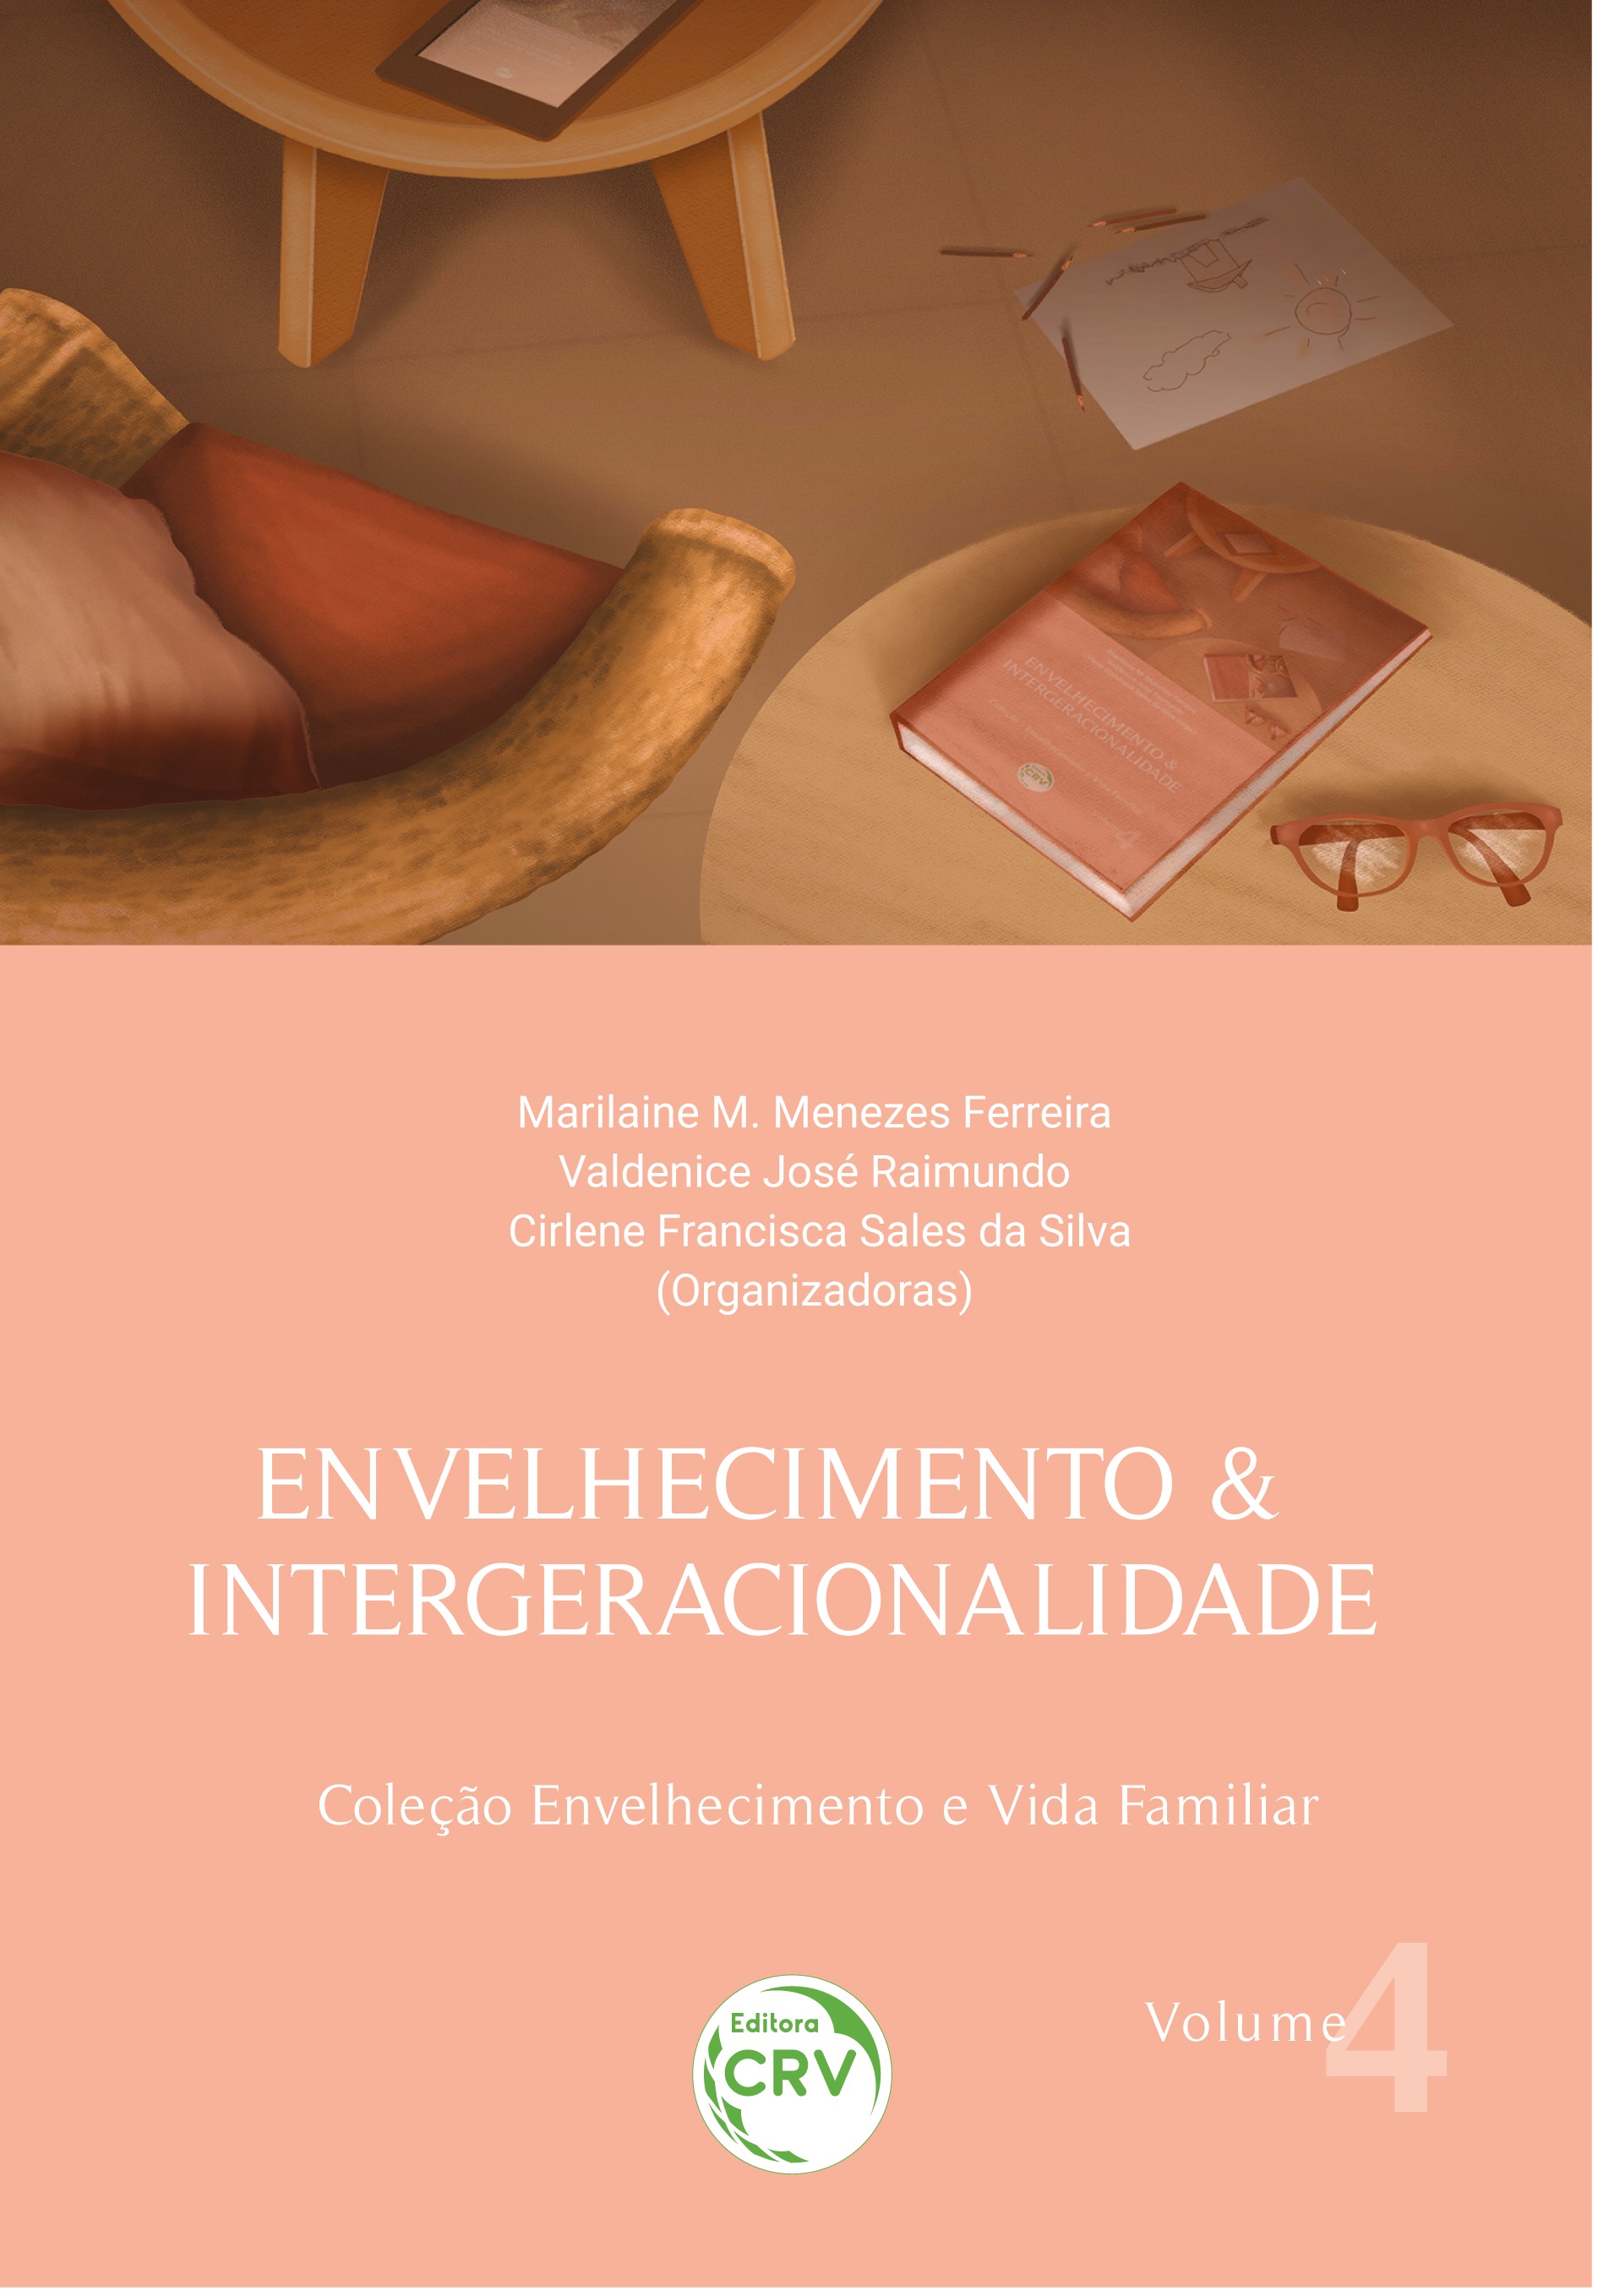 ENVELHECIMENTO & INTERGERACIONALIDADE <br>Coleção Envelhecimento e Vida Familiar<br> Volume 4